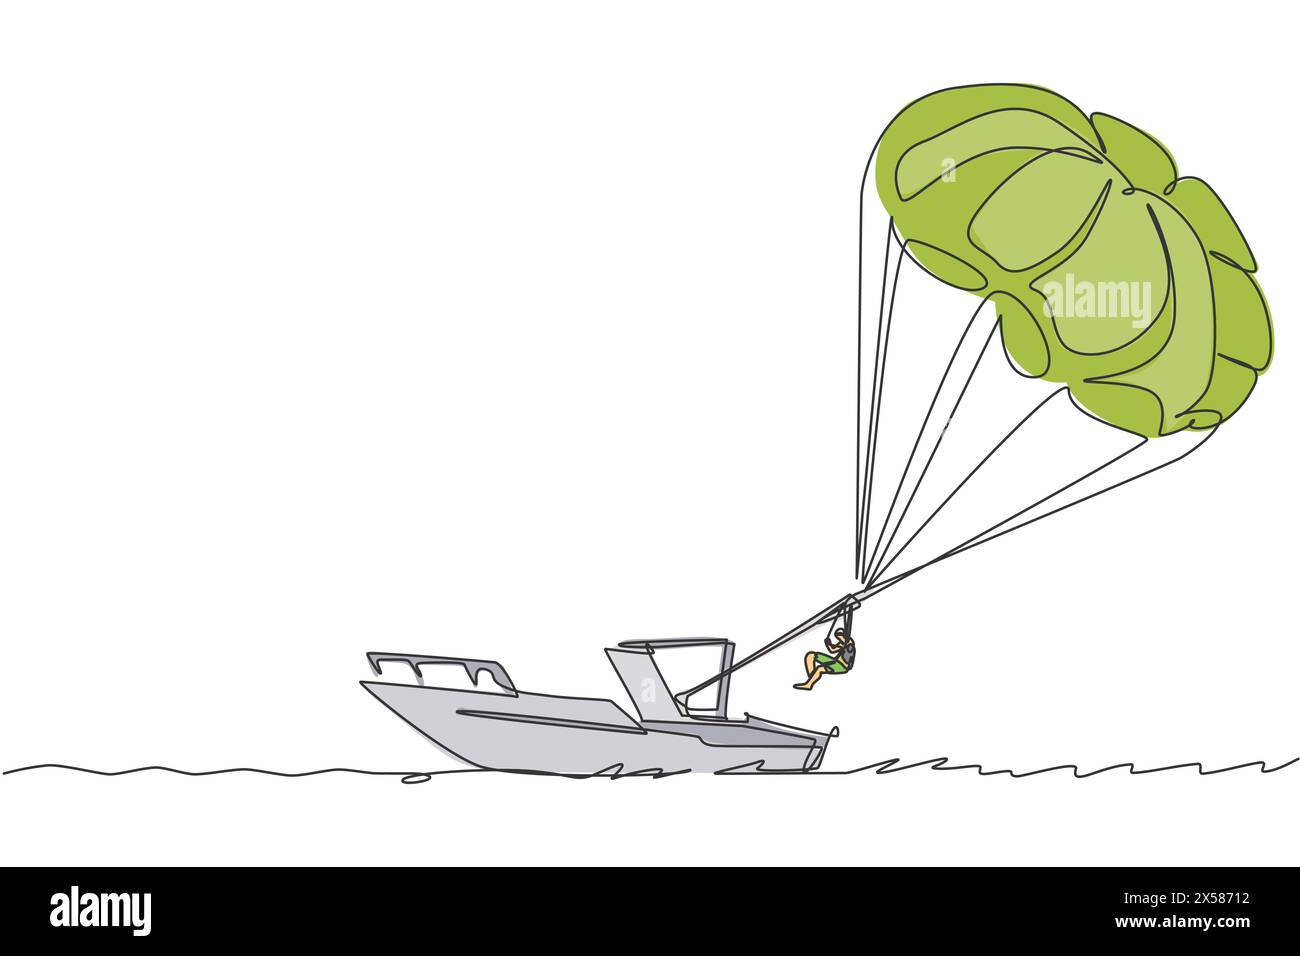 Ligne continue unique dessinant jeune touriste volant avec parachute ascensionnel sur le ciel tiré par un bateau. Concept de sport de vacances extrêmes Illustration de Vecteur